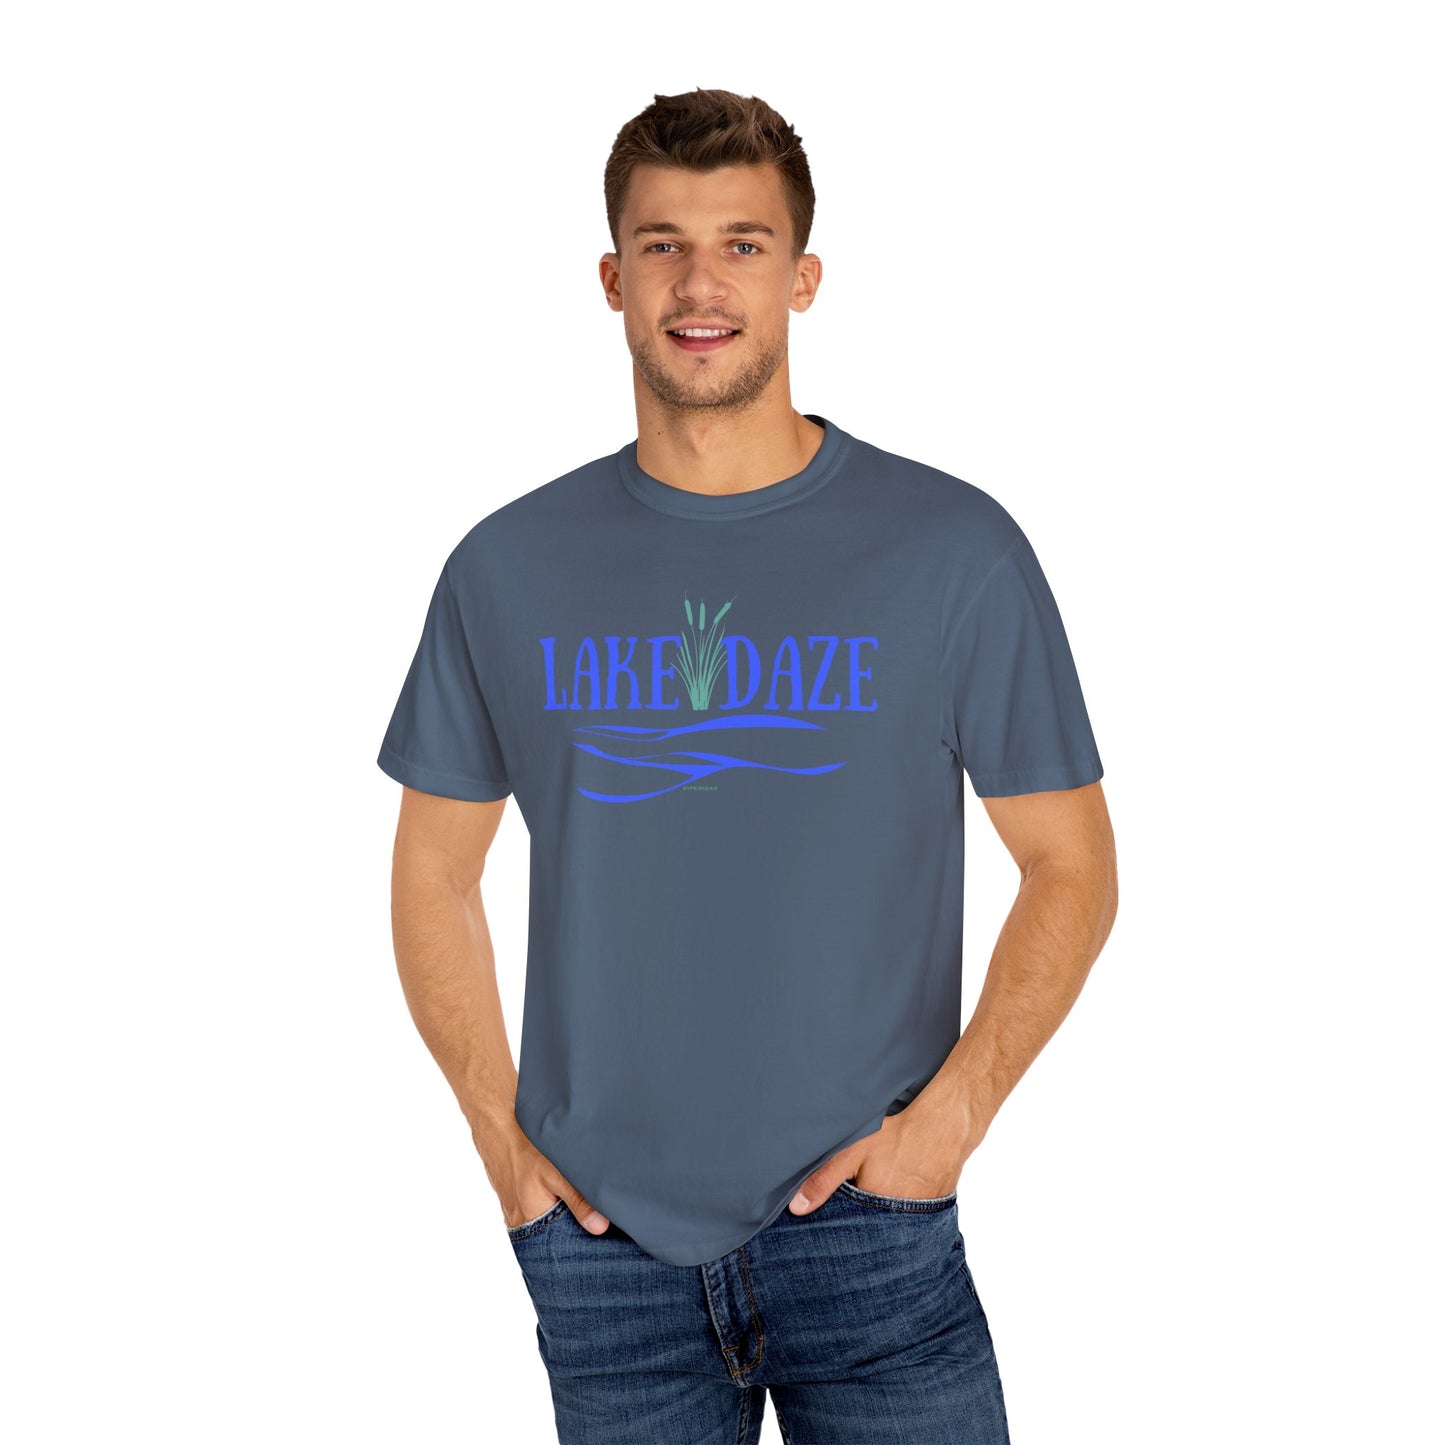 Lake Daze Unisex Garment-Dyed T-shirt